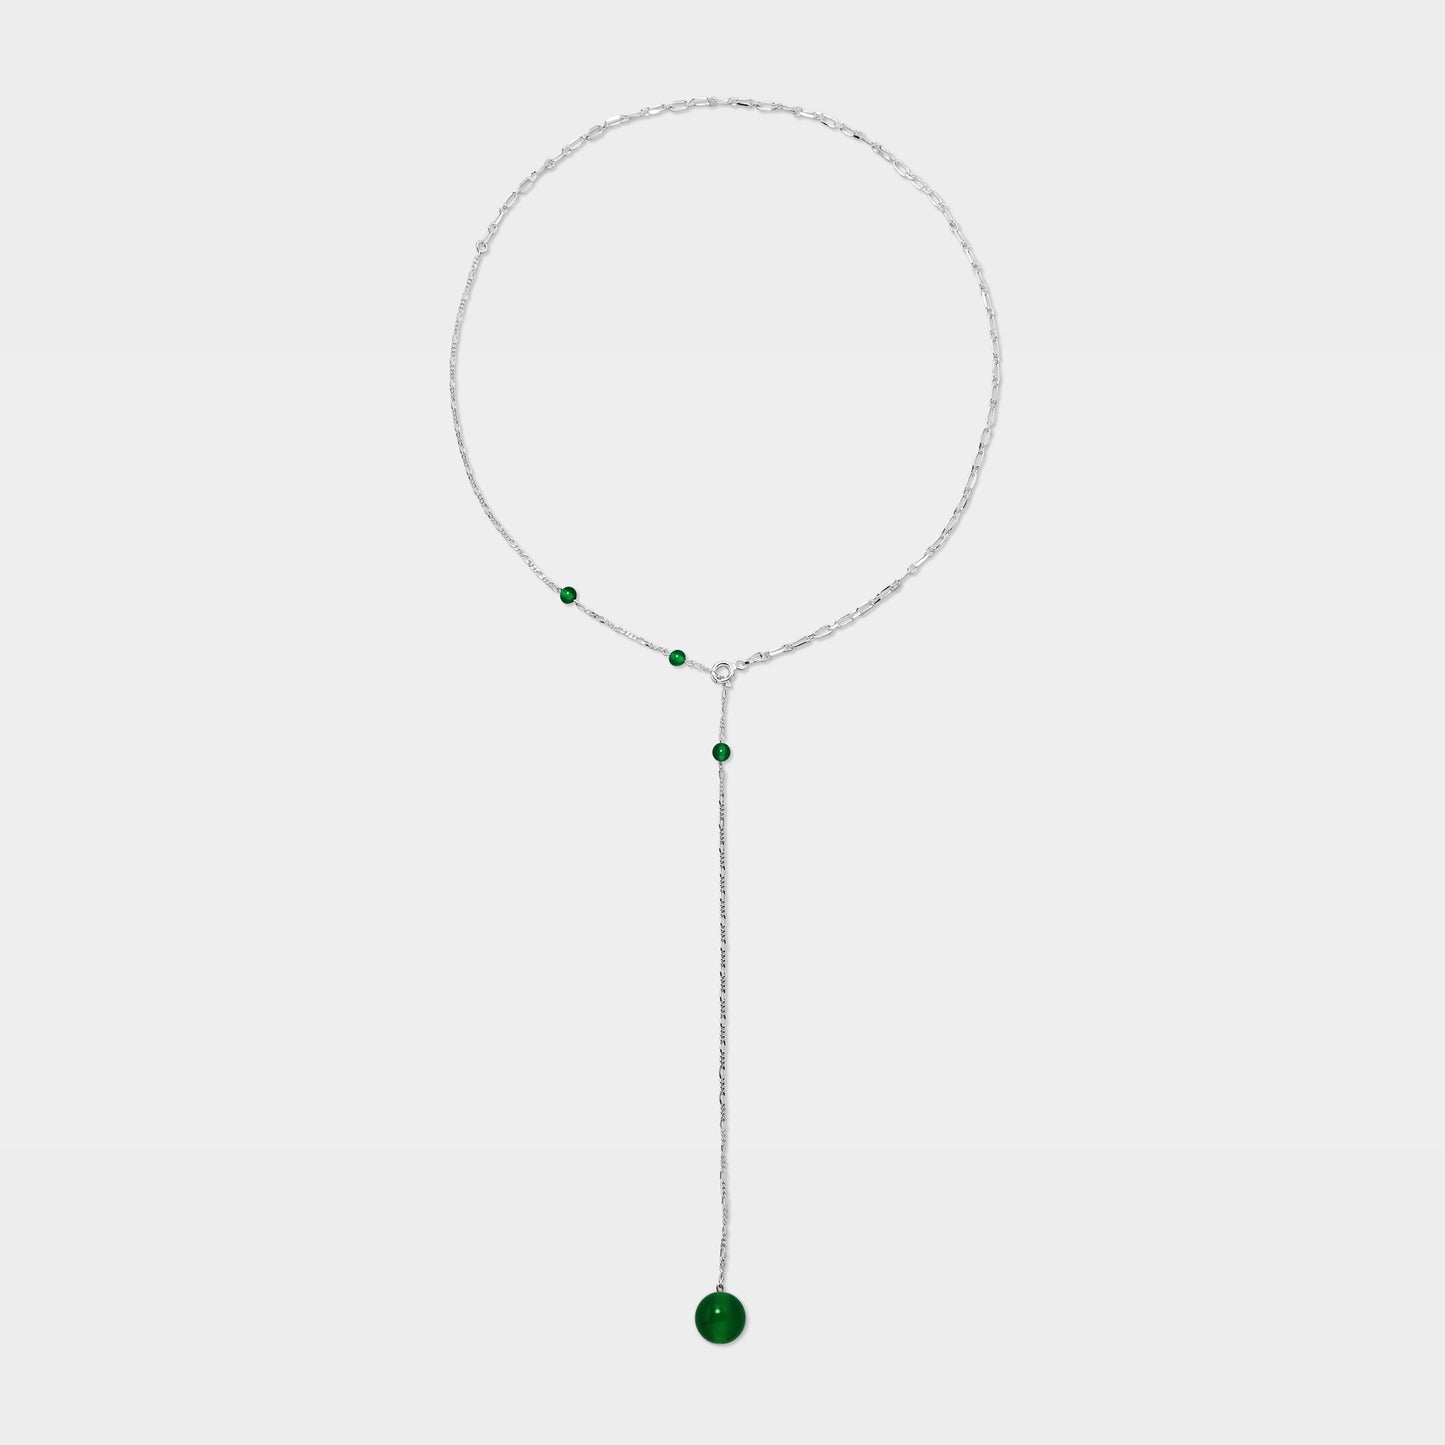 【粉彩】【四色】記憶水晶球/ 大圓珠Y字項鍊Memory Crystal Ball Necklace